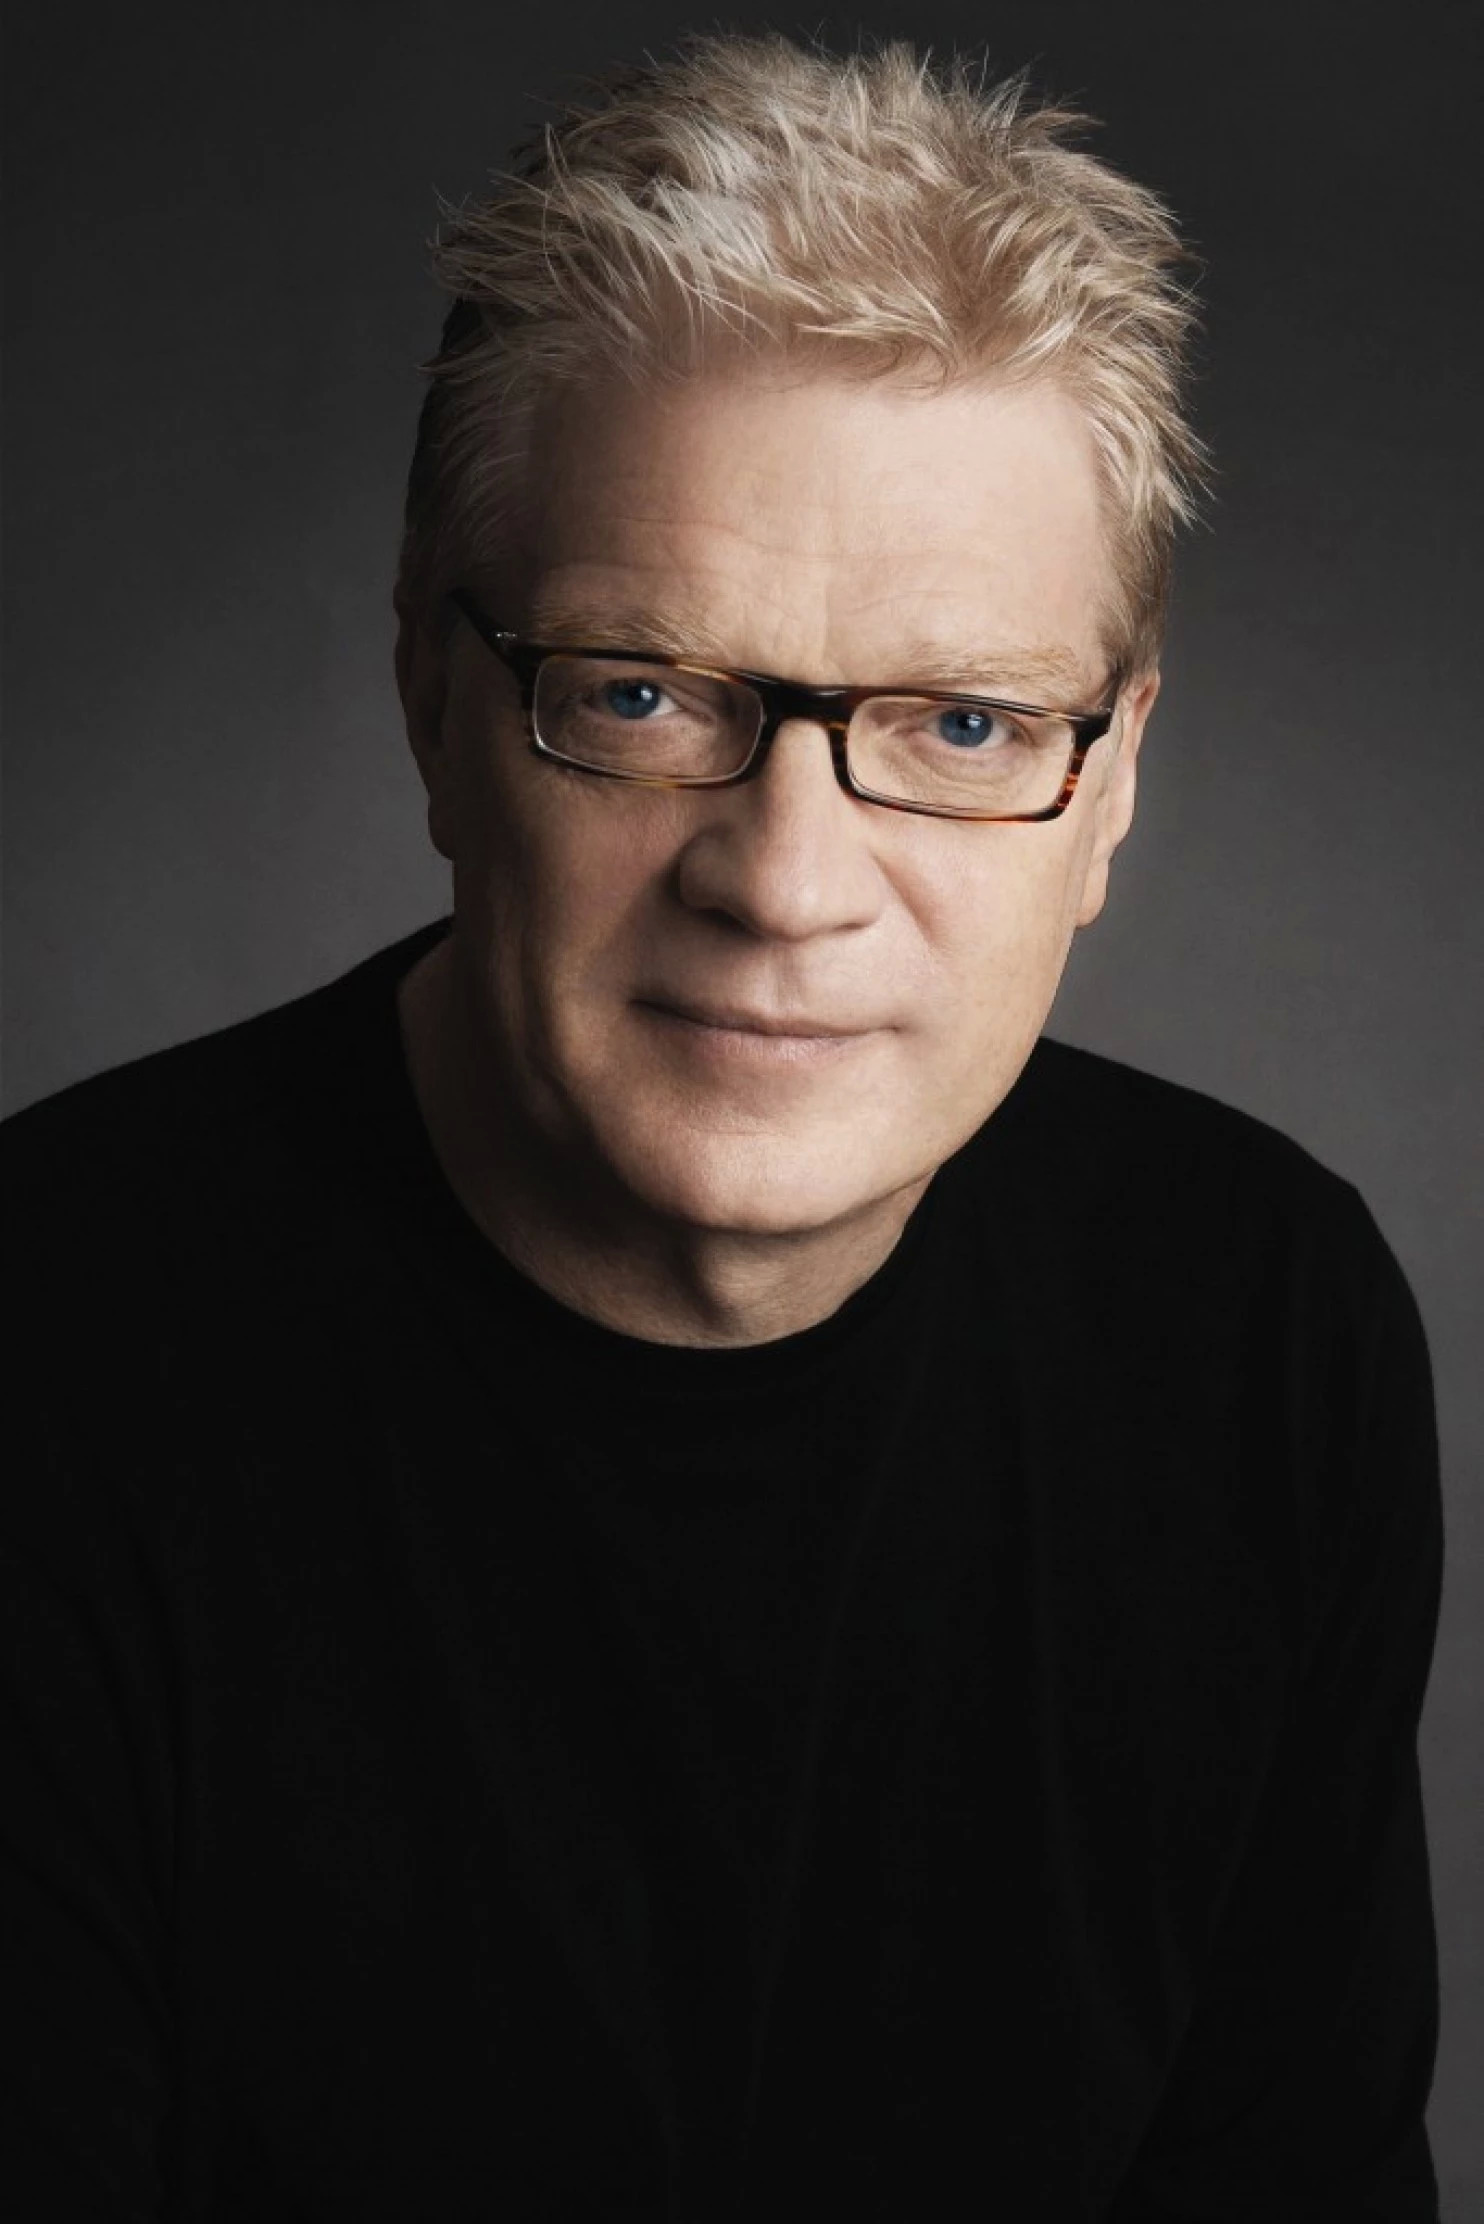 Ken Robinson on Creative Schools